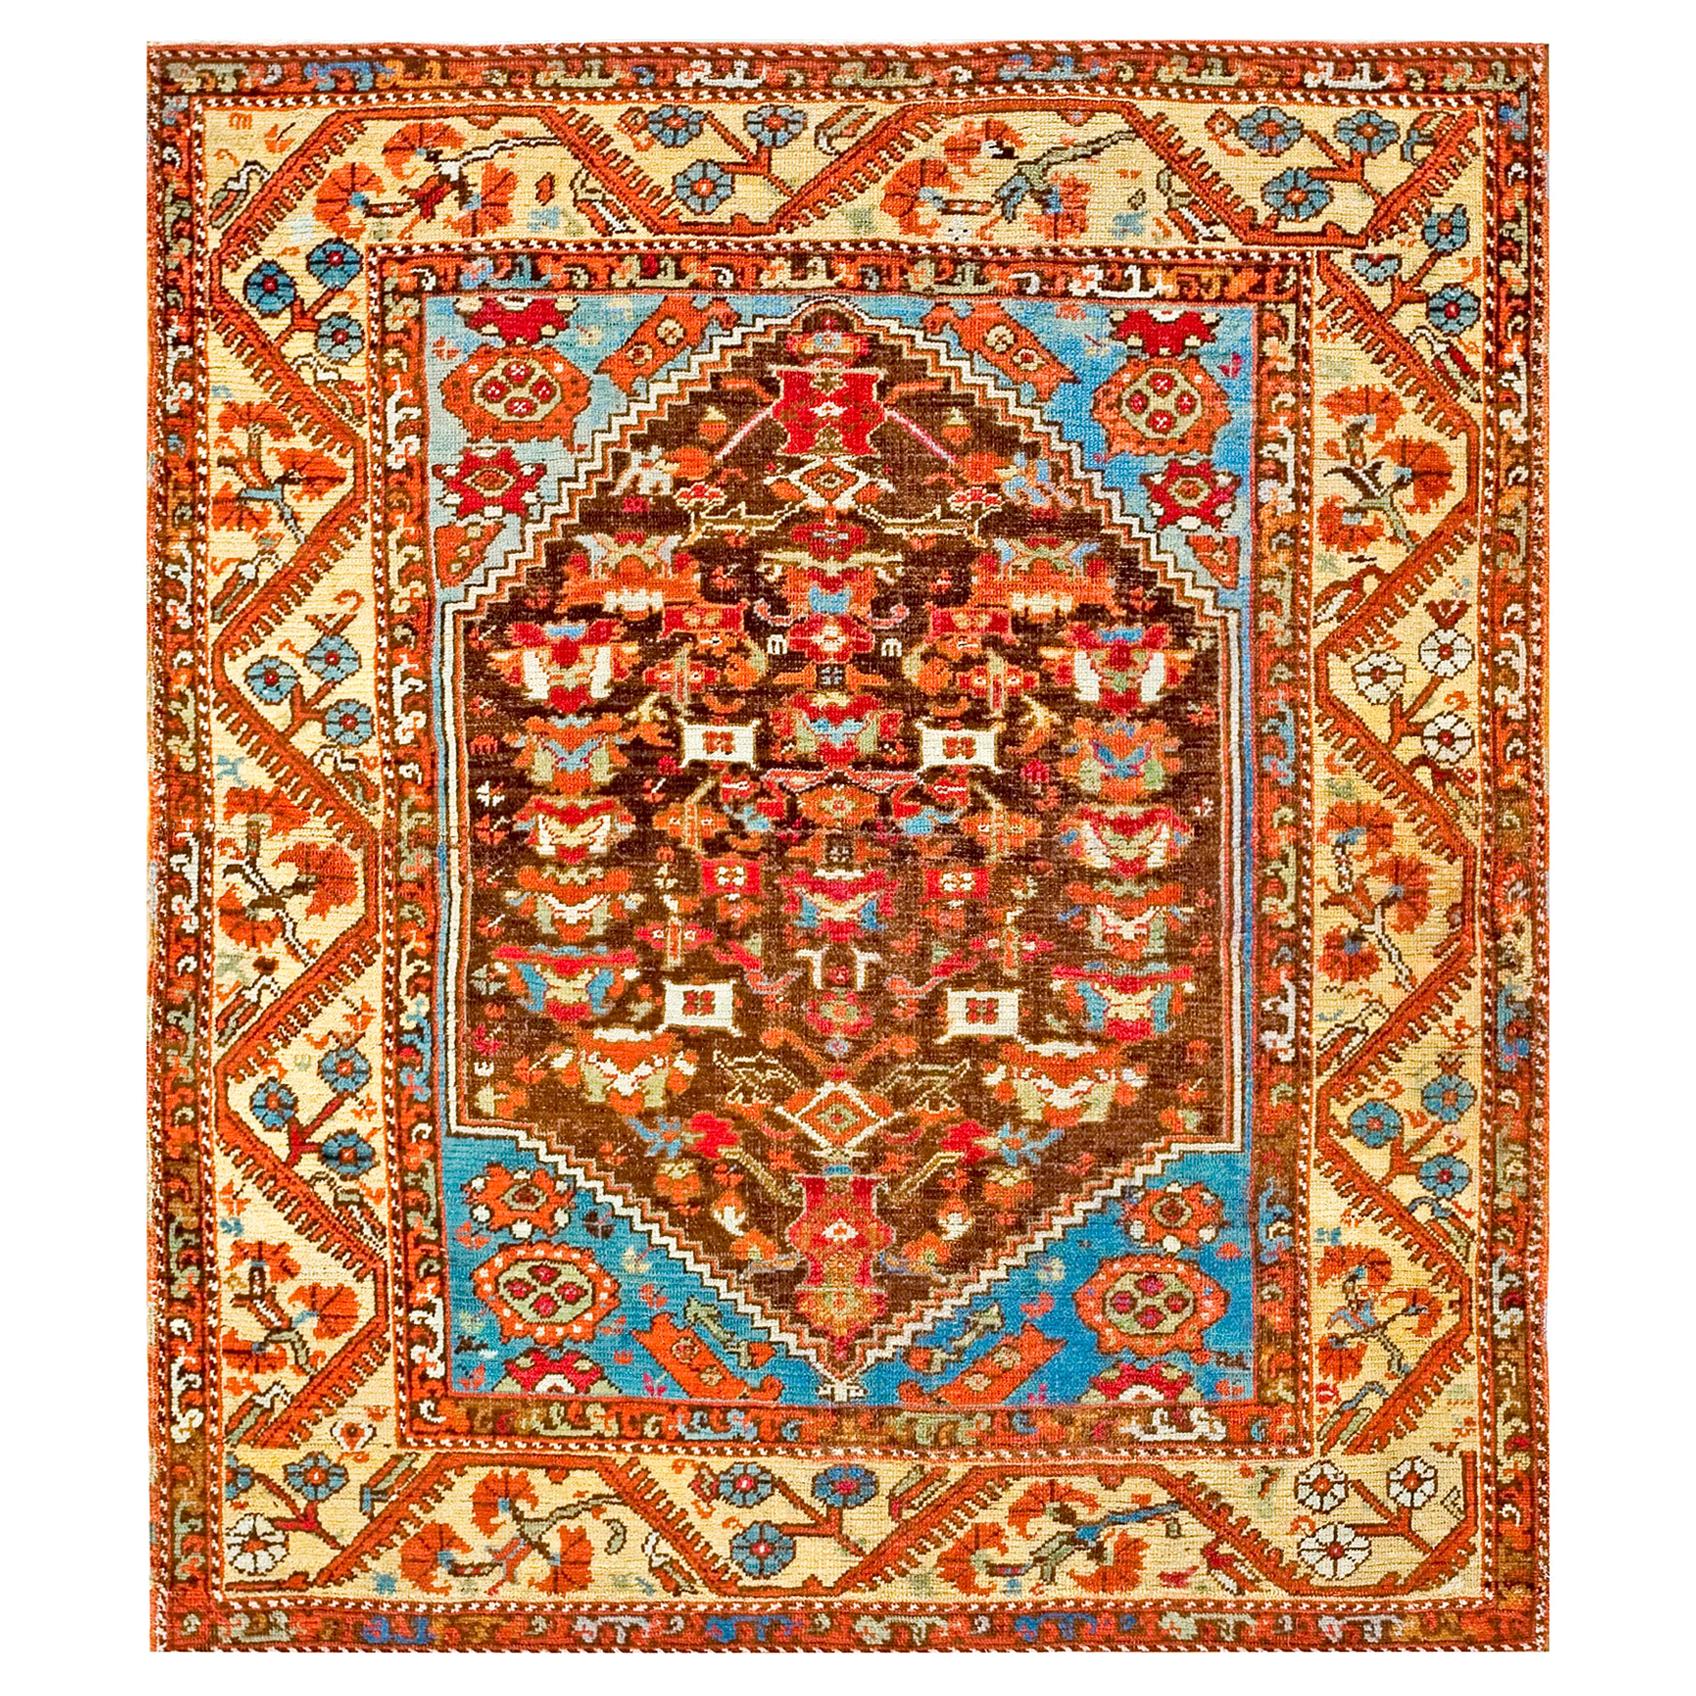 Early 19th Century Turkish Anatolian Kula Carpet ( 4'6" x 5'2" - 137 x 158 )